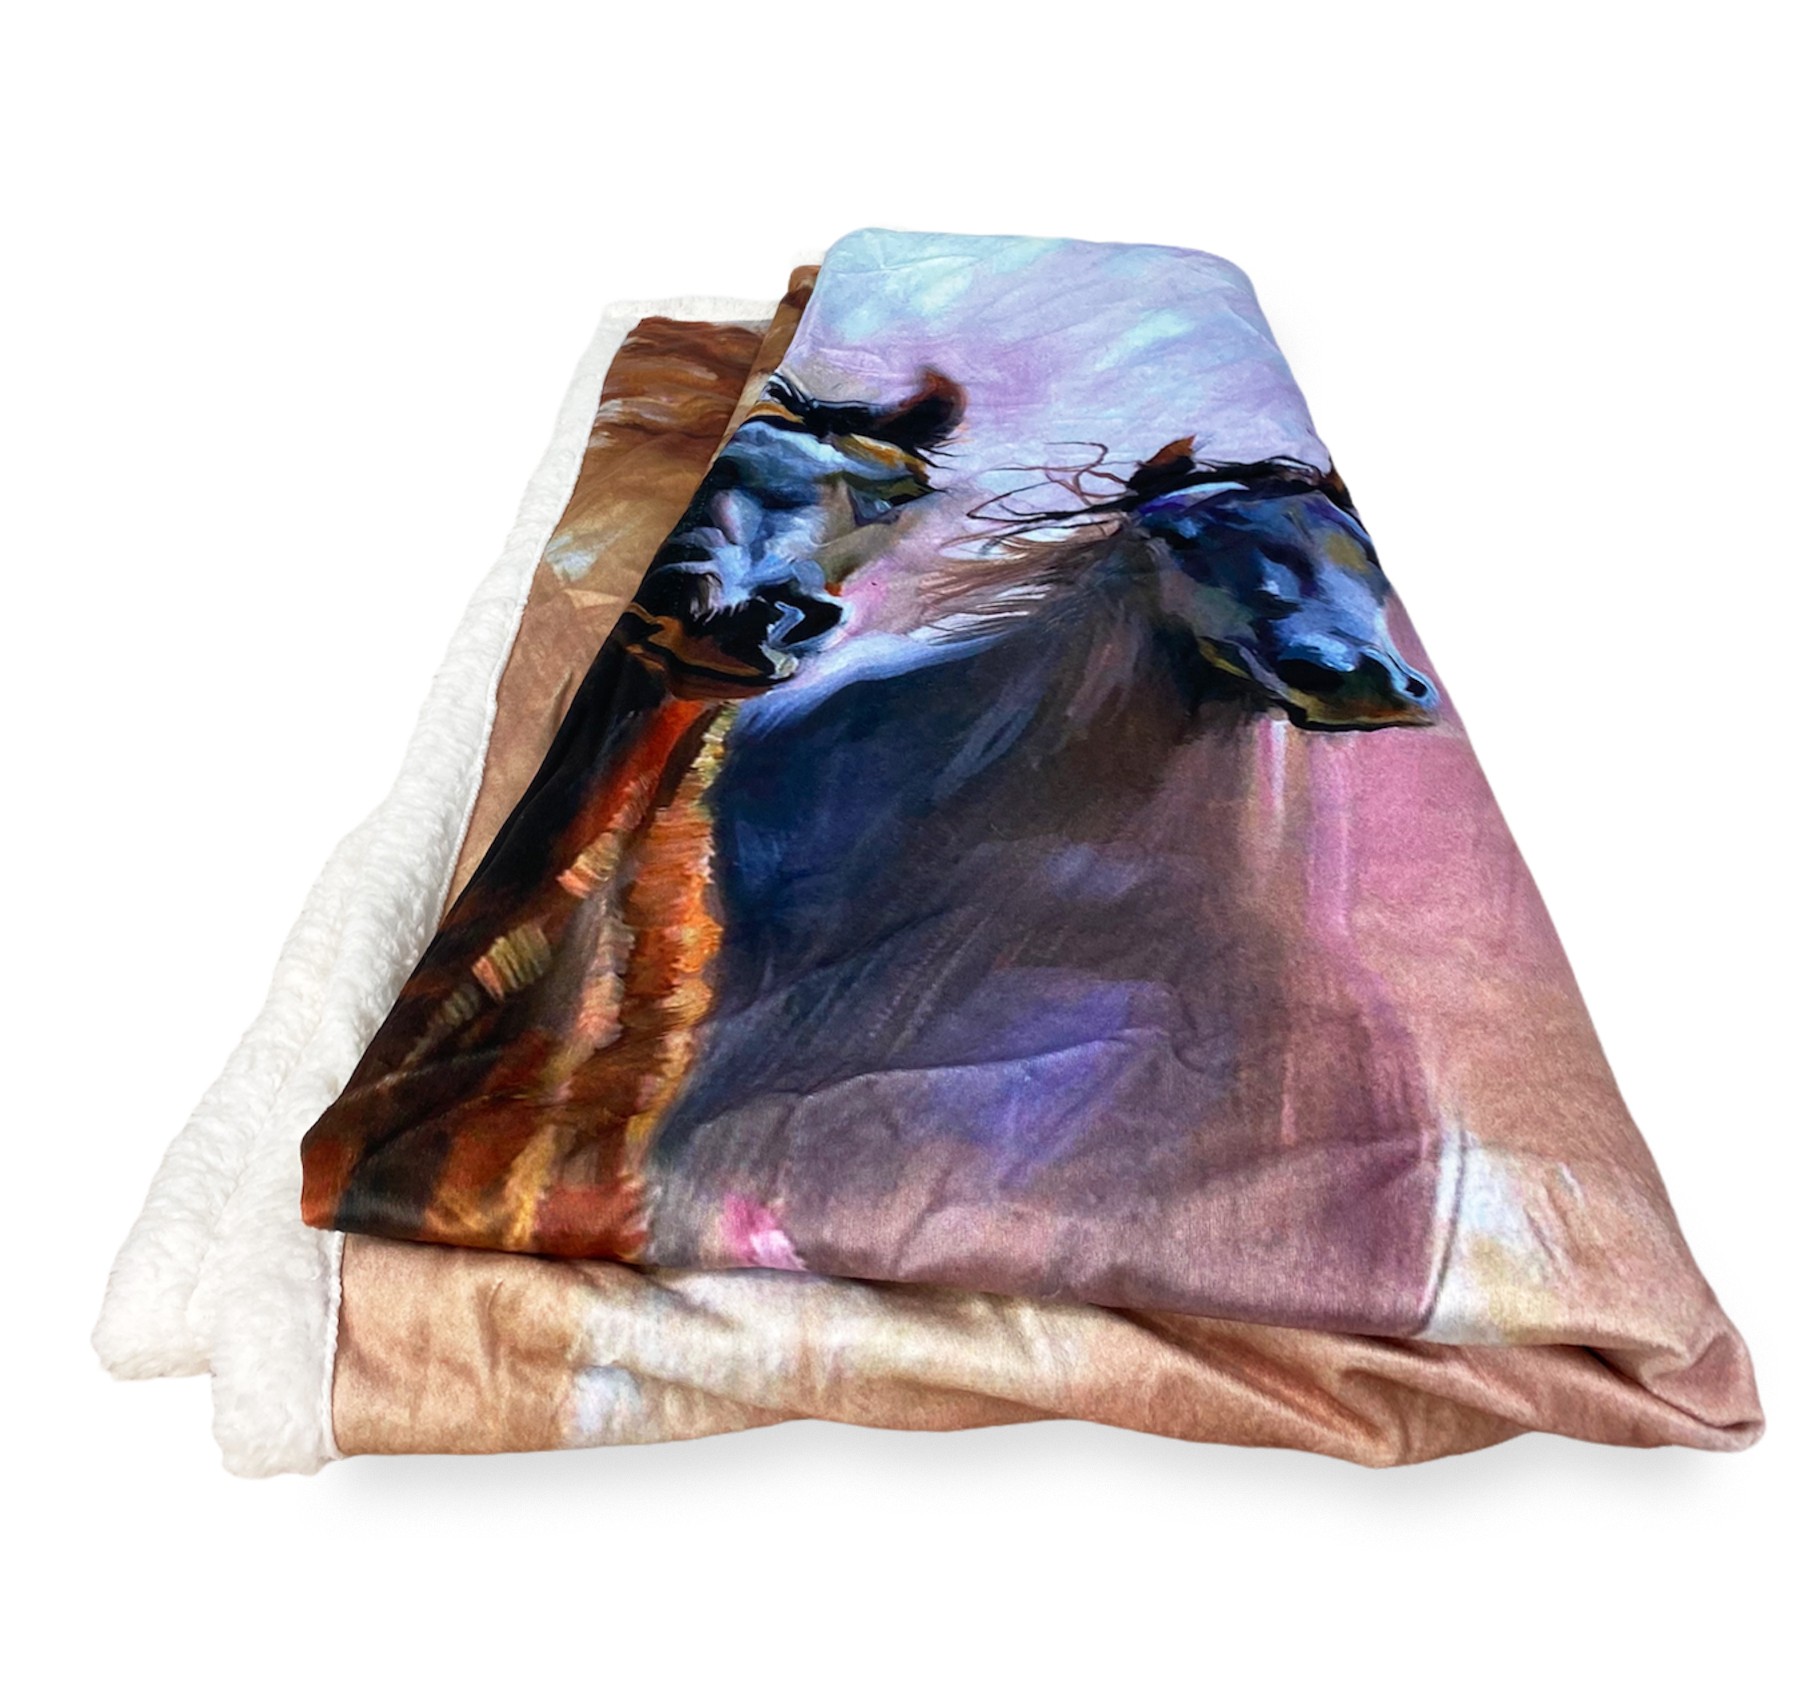 LOMAER Plaid Couverture Cheval pour Adultes 2 Personnes Douce et  Confortable Couverture Polaire avec Motif Animal Marron Cheval Fleece  Blanket for Bed